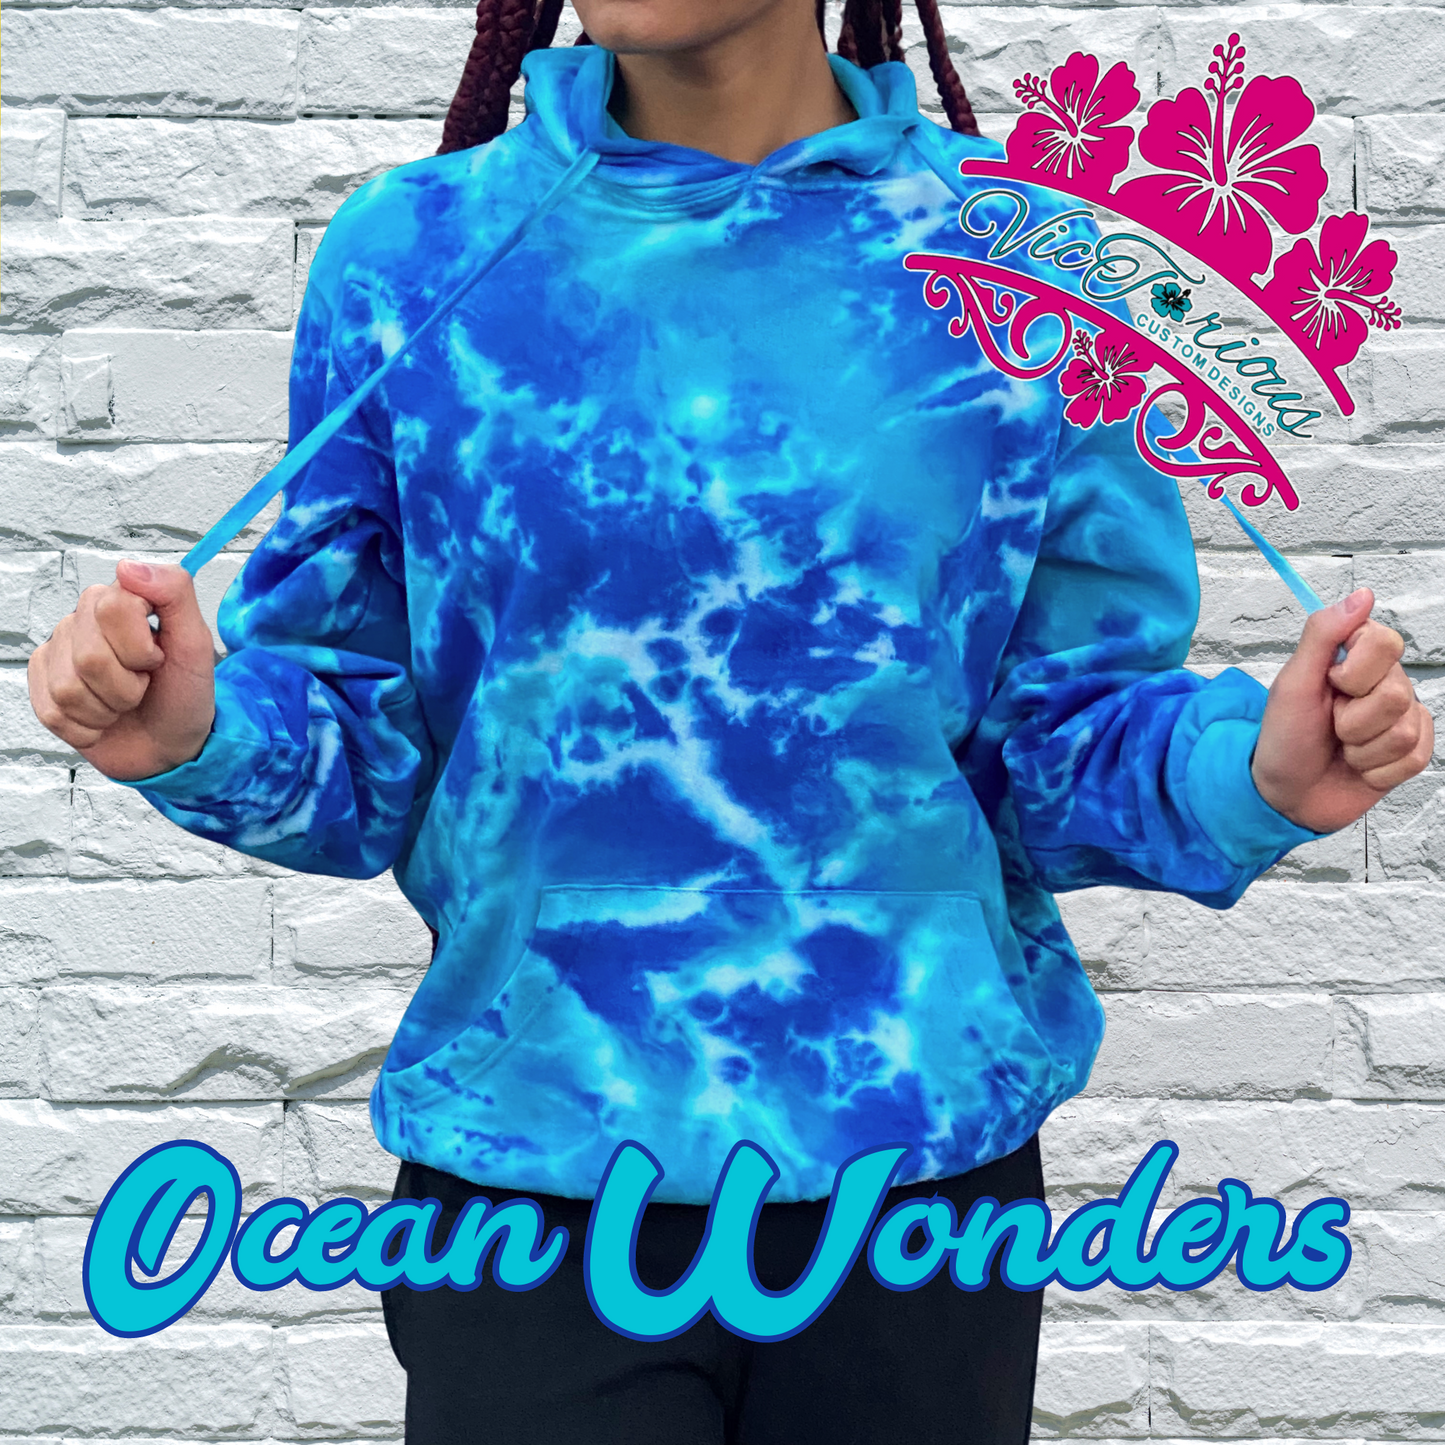 Ocean Wonders Tie Dye Hoodie